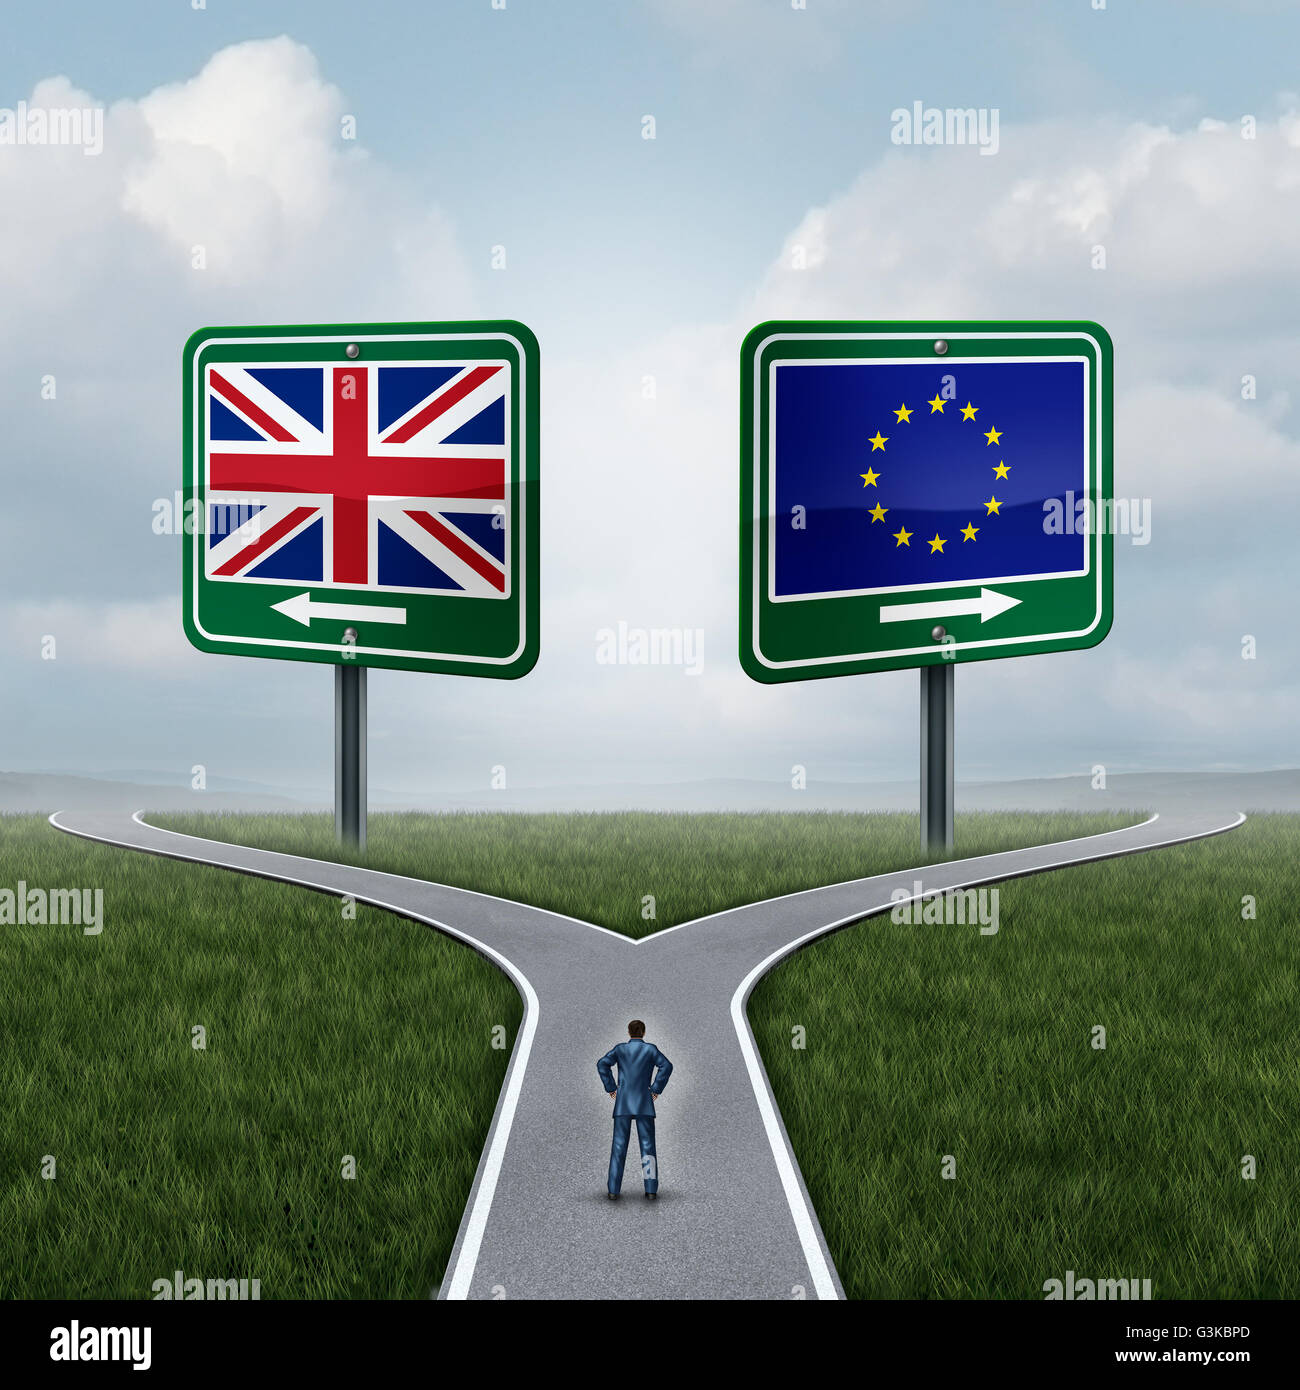 Großbritannien-EU Frage als Brexit Konzept im Zusammenhang mit der UK Abstimmung Verwirrung und Euro-Zone und Europa Mitgliedschaft britischen Entscheidung als eine Person steht auf einer Kreuzung Dilemma mit Fahnen auf Verkehrszeichen mit 3D Abbildung Elemente. Stockfoto